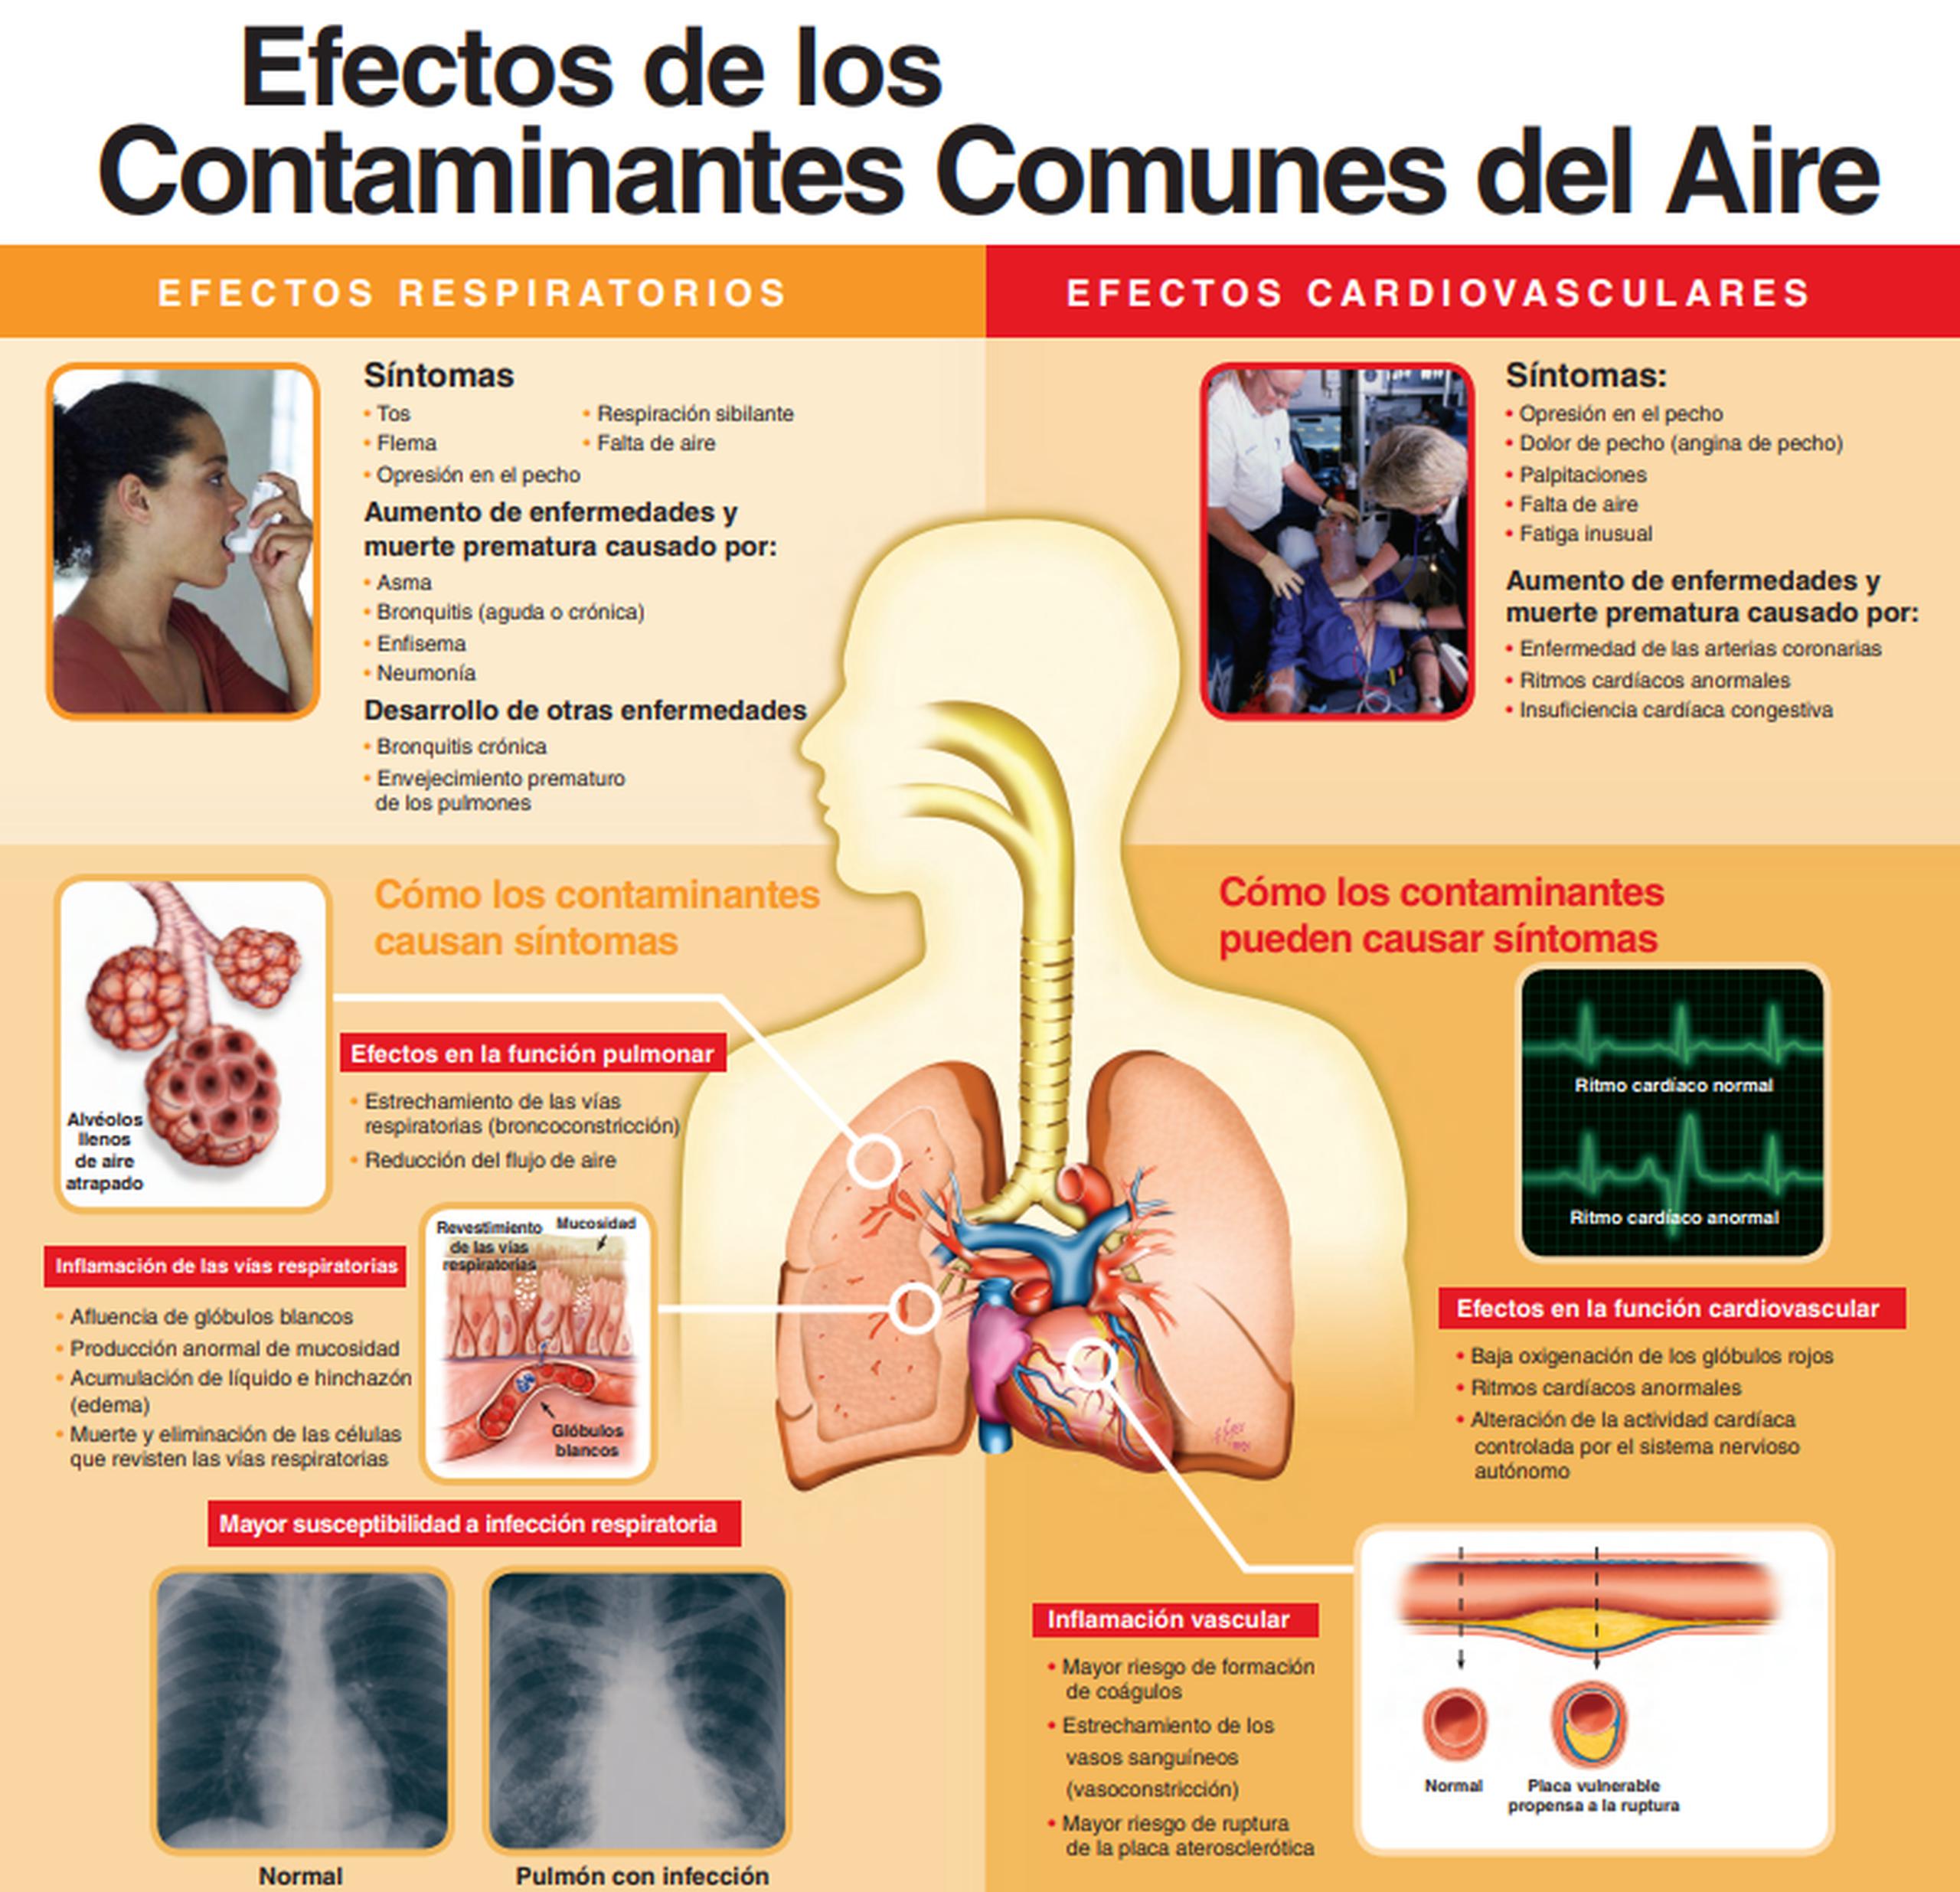 Información del DRNA sobre los efectos de los contaminantes comunes del aire.